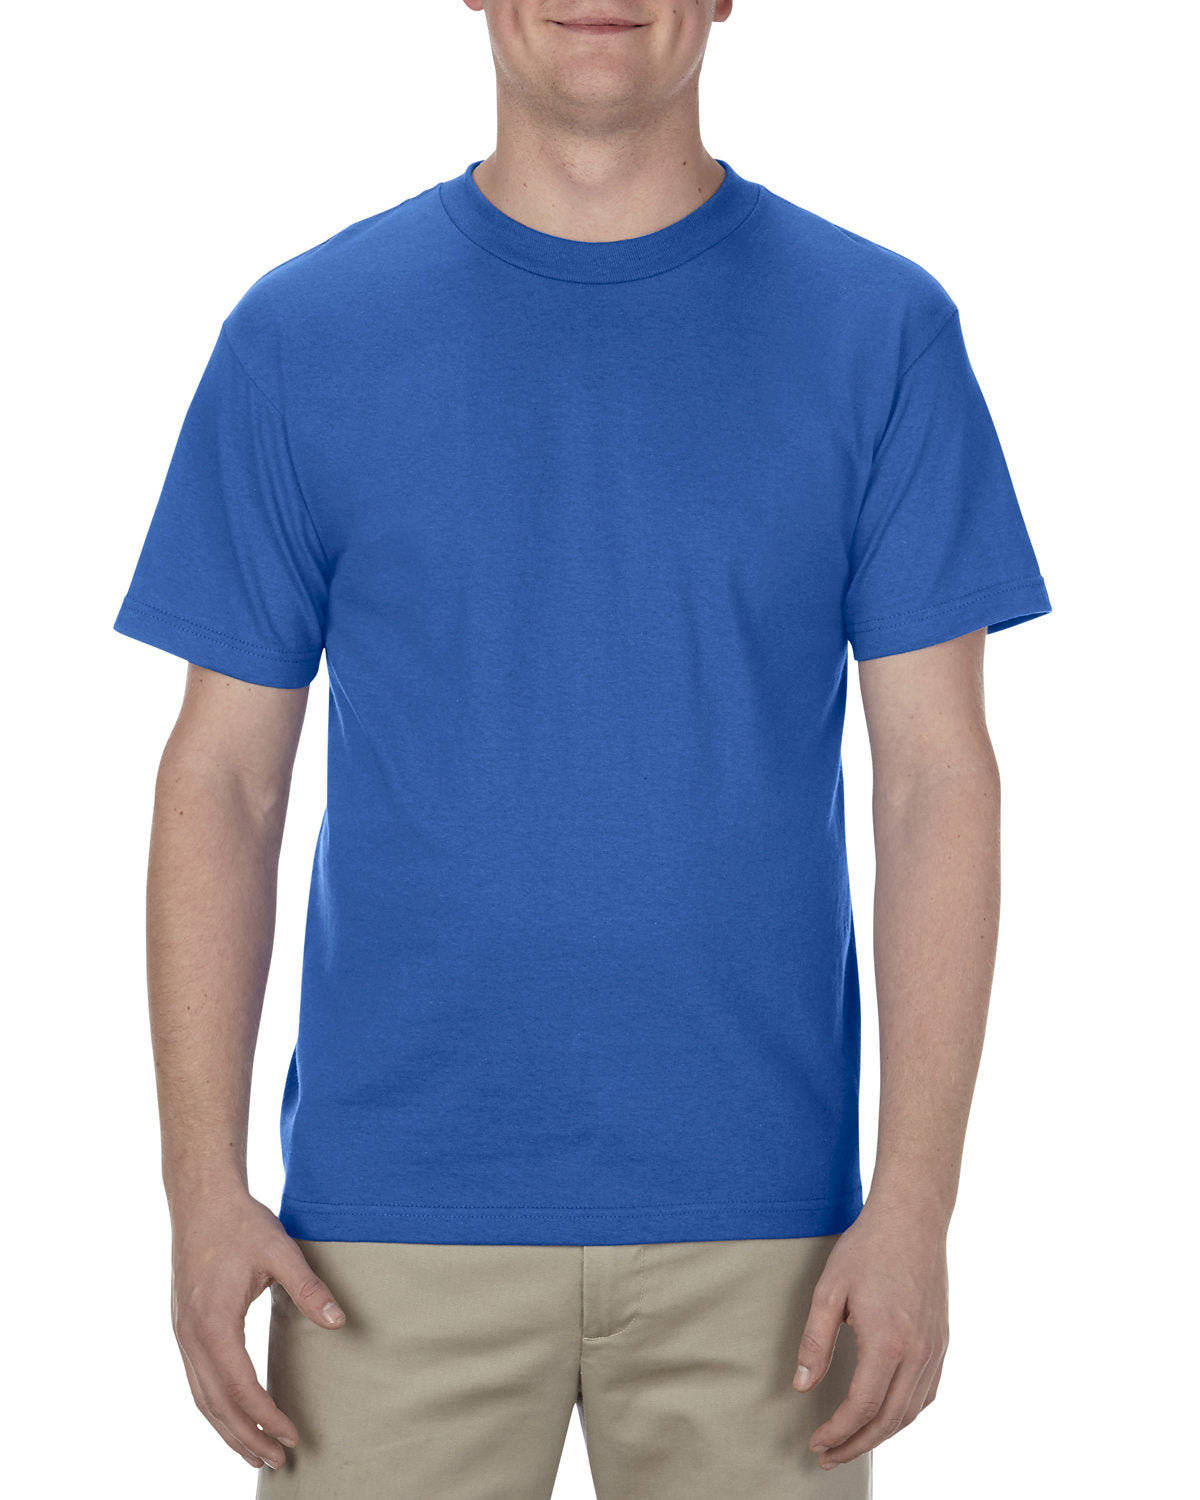 Alstyle Adult 6.0 oz., 100% Cotton T-Shirt